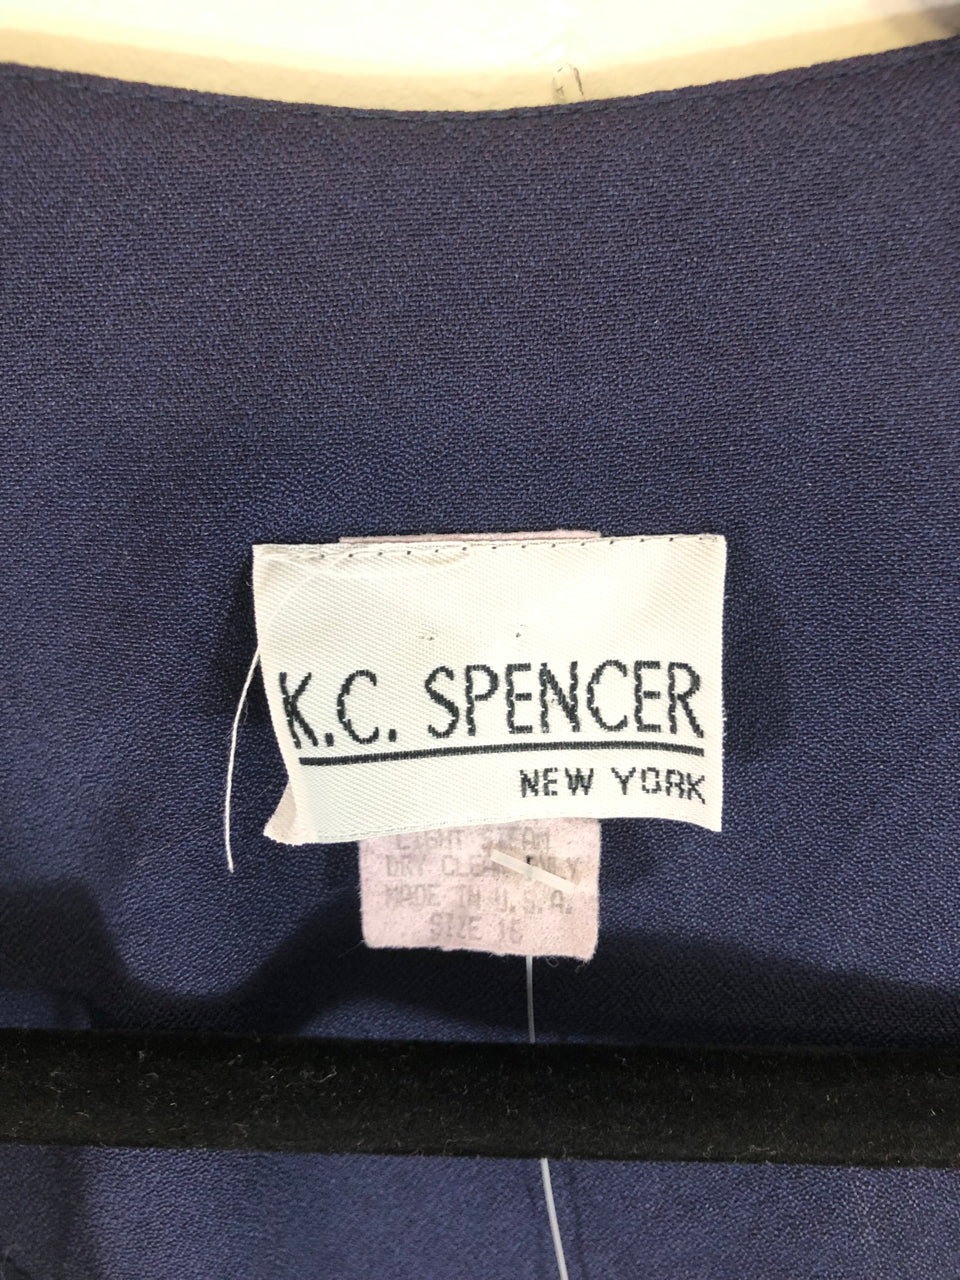 KC Spencer Jacket